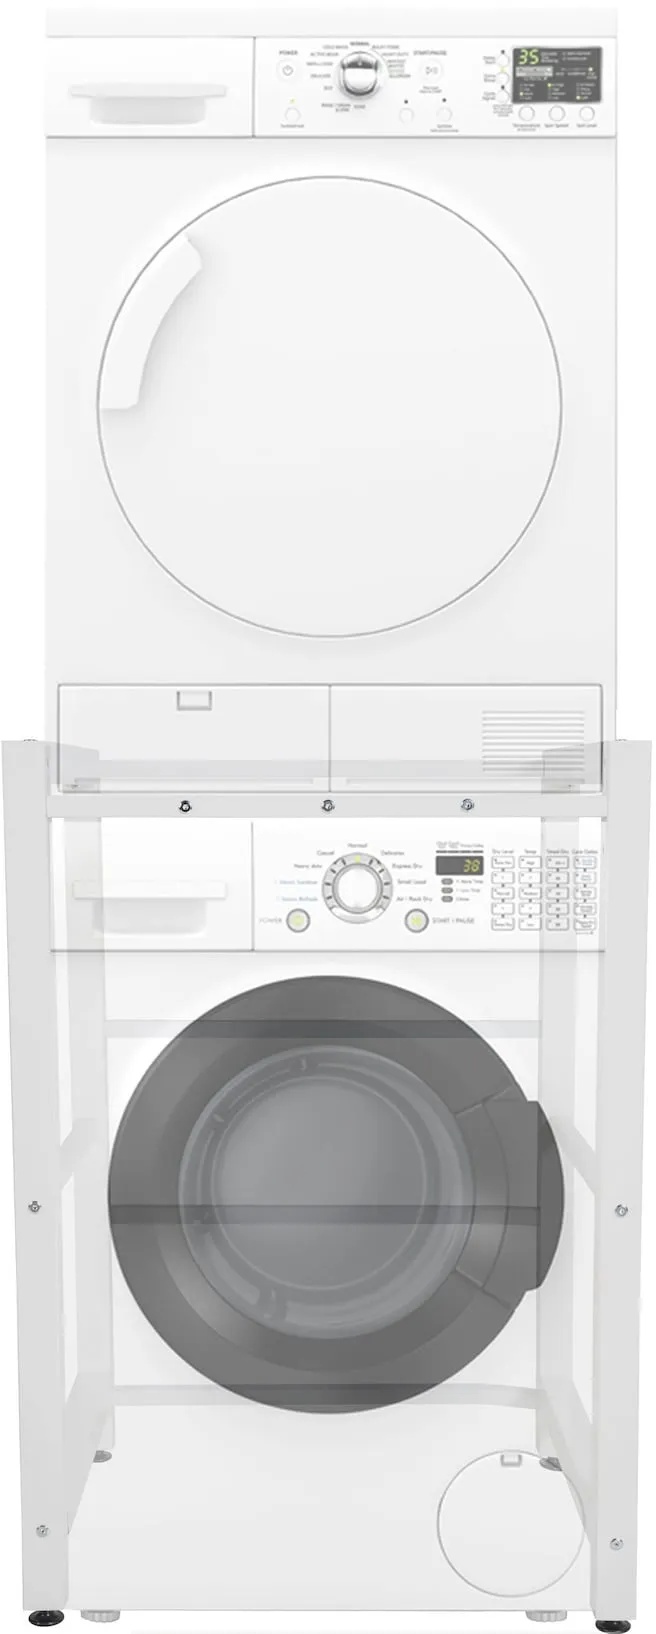 CLP Waschmaschinenregal Medina I Für Bis Zu 2 Haushaltsgeräte I Überbau Aus Stahl